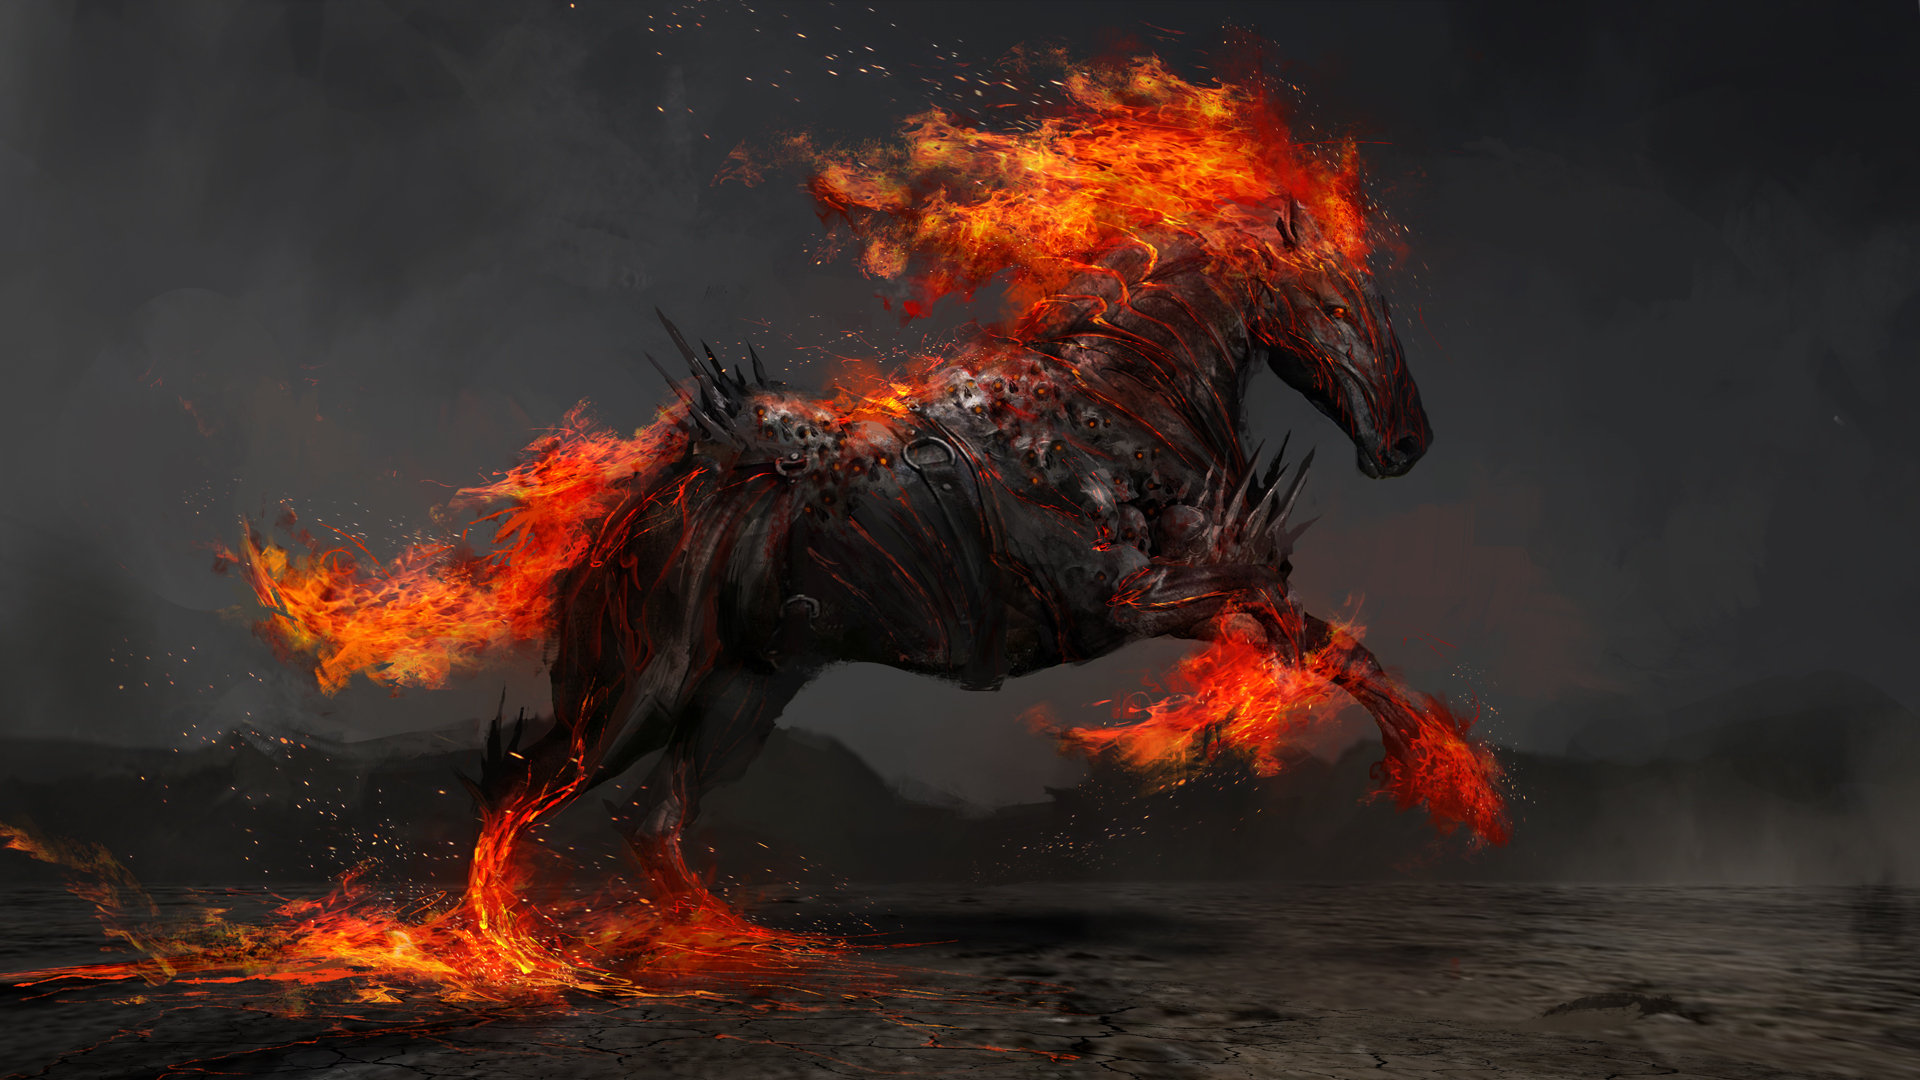 General 1920x1080 ArtStation horse artwork fire fantasy art nightmare